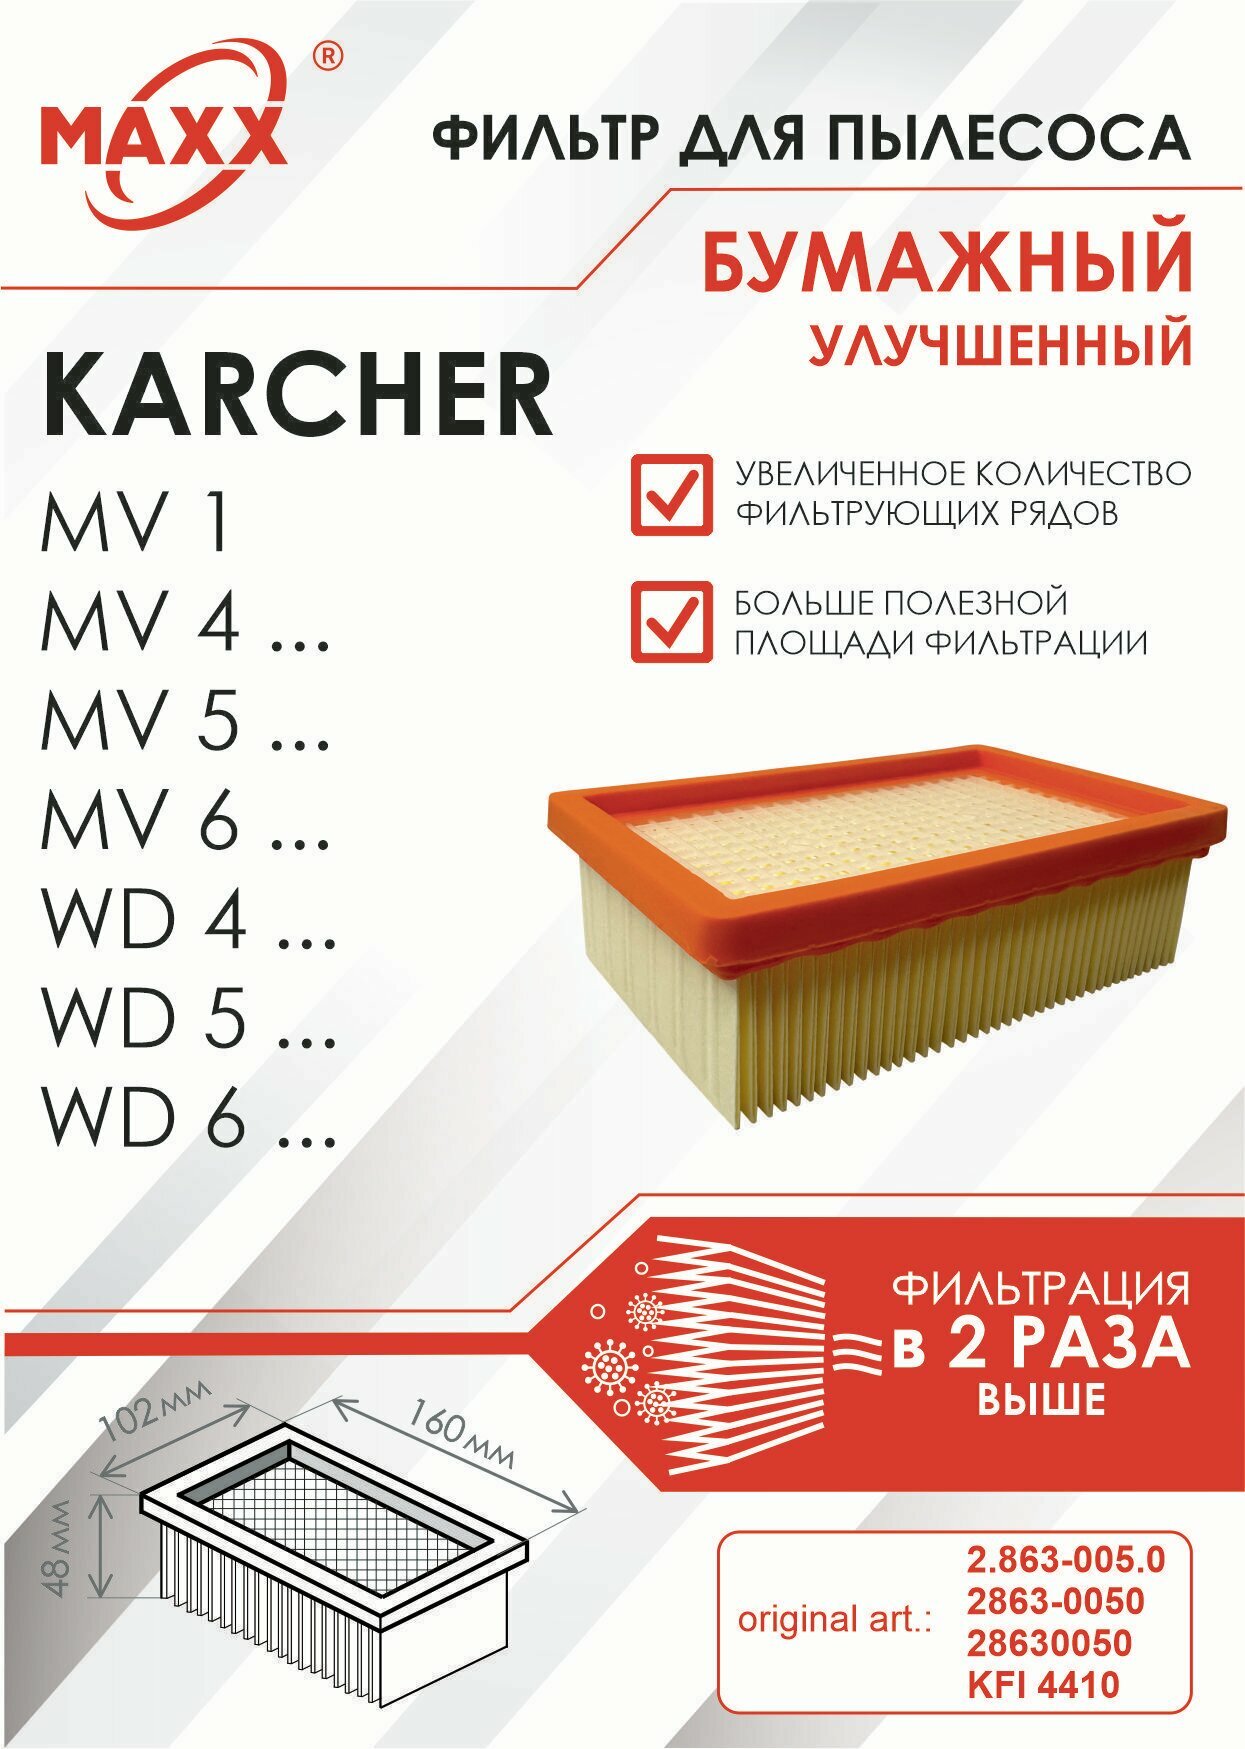 Плоский складчатый фильтр бумажный улучшенный для пылесоса Karcher серий MV 4 MV 6 и WD 4 WD 6 (KFI 4410)